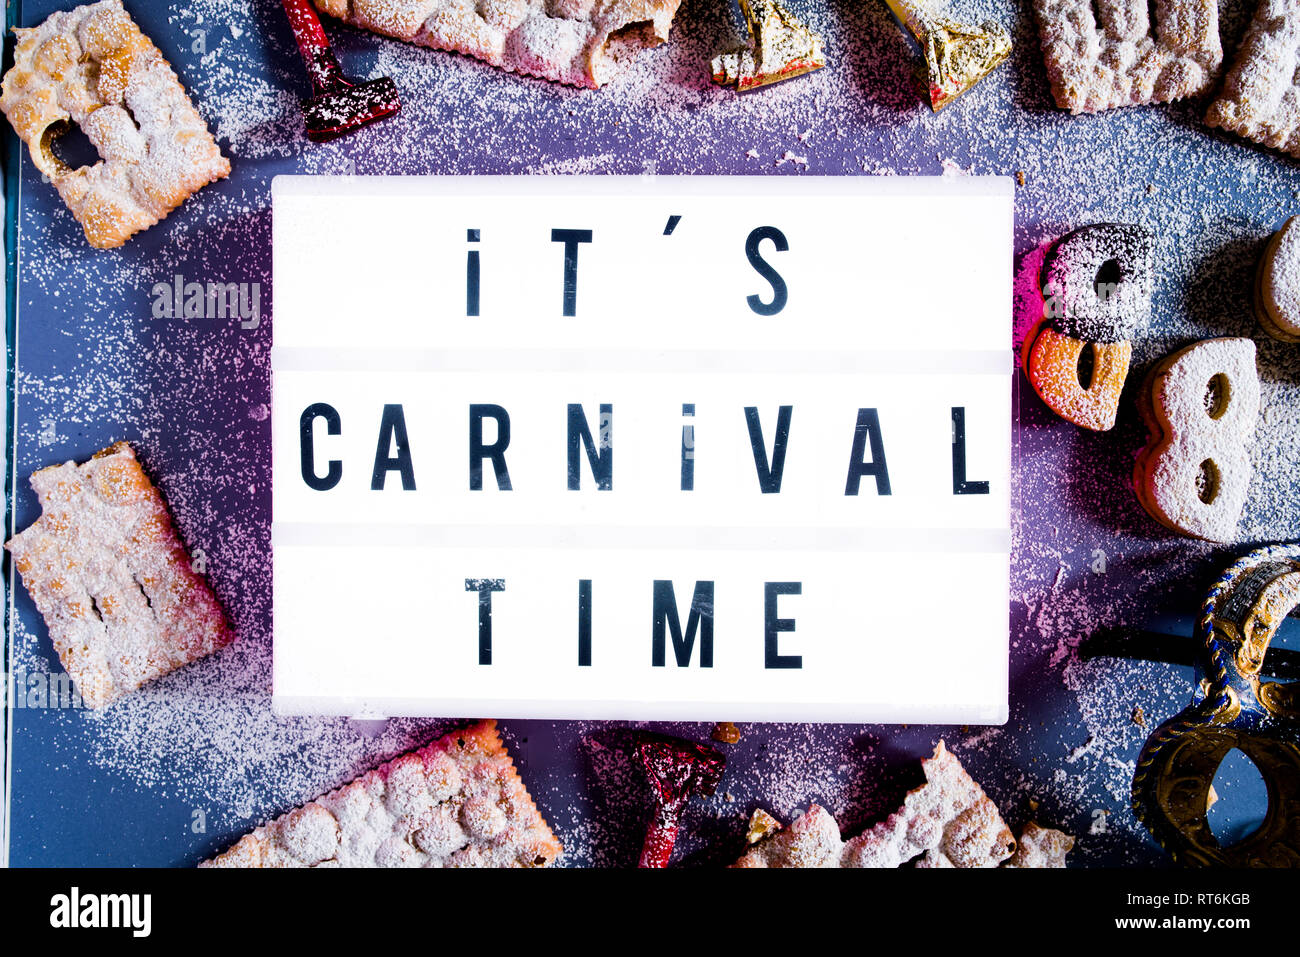 Karneval Konzept, die Lightbox mit der Meldung "Es ist Karneval" durch Cookies und Süßwaren-typisch für Karneval Kreis aufleuchten, wie Italienische sfrappole Stockfoto